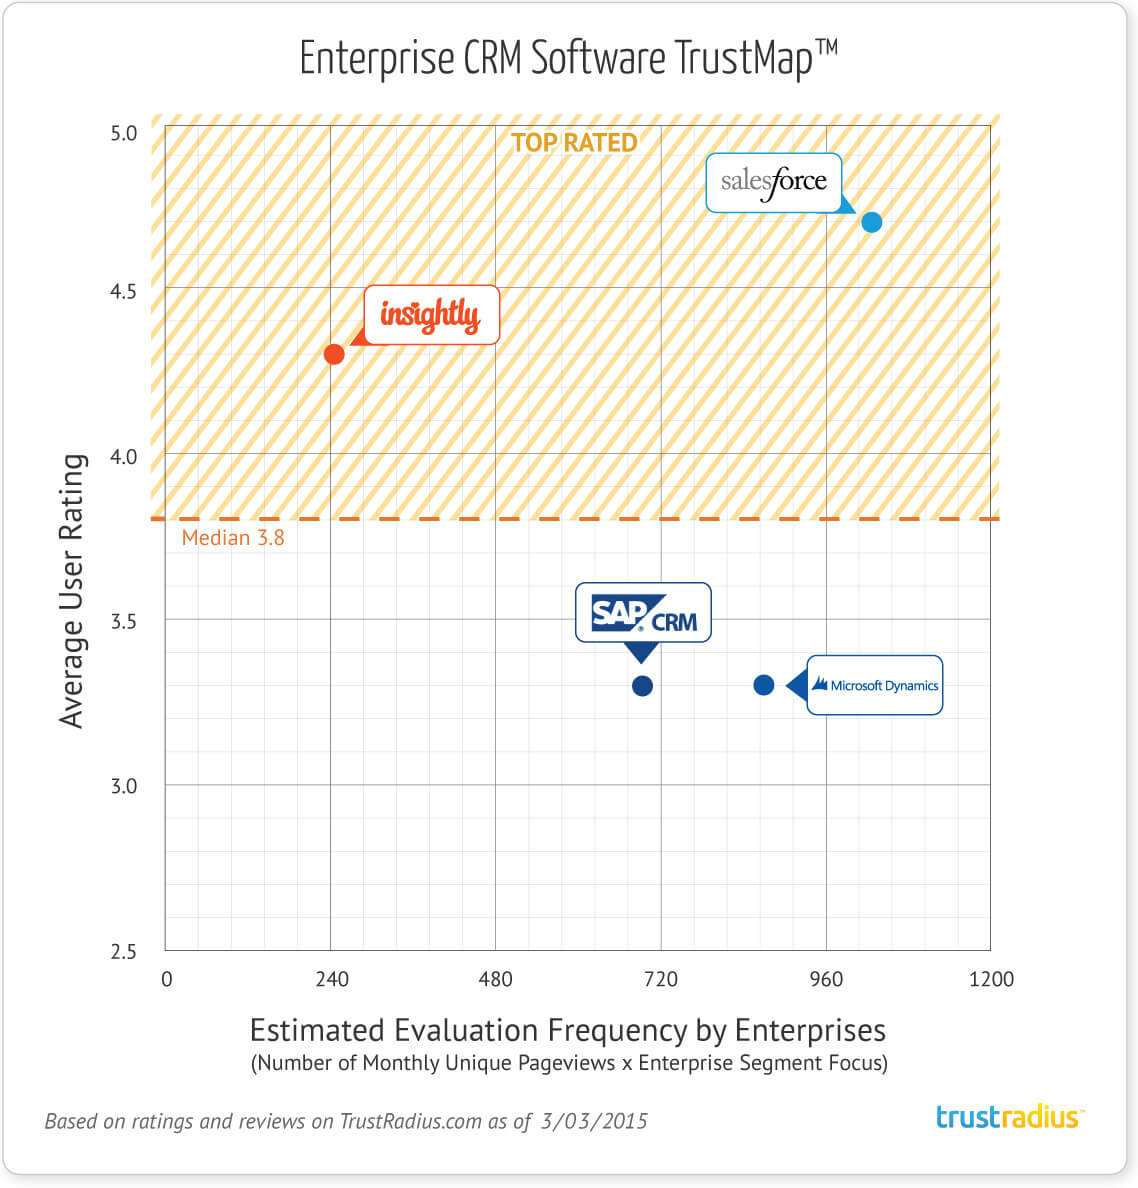 Enterprise CRM Software TrustMap